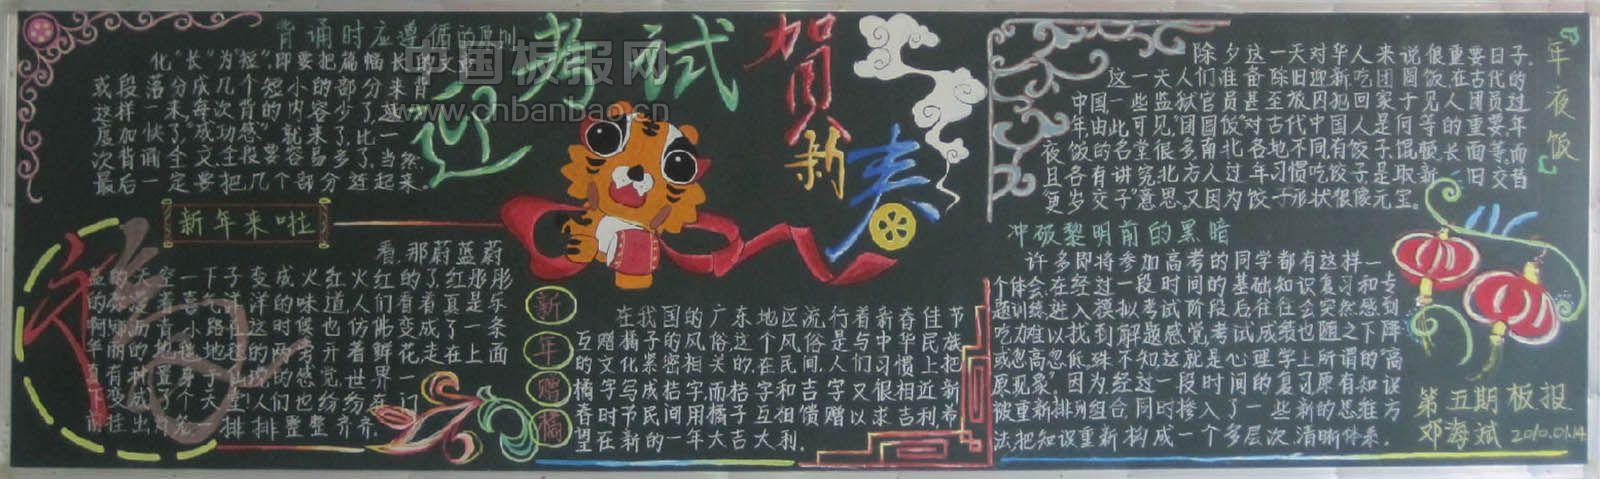 关于春节的黑板报 关于春节的黑板报图片大全